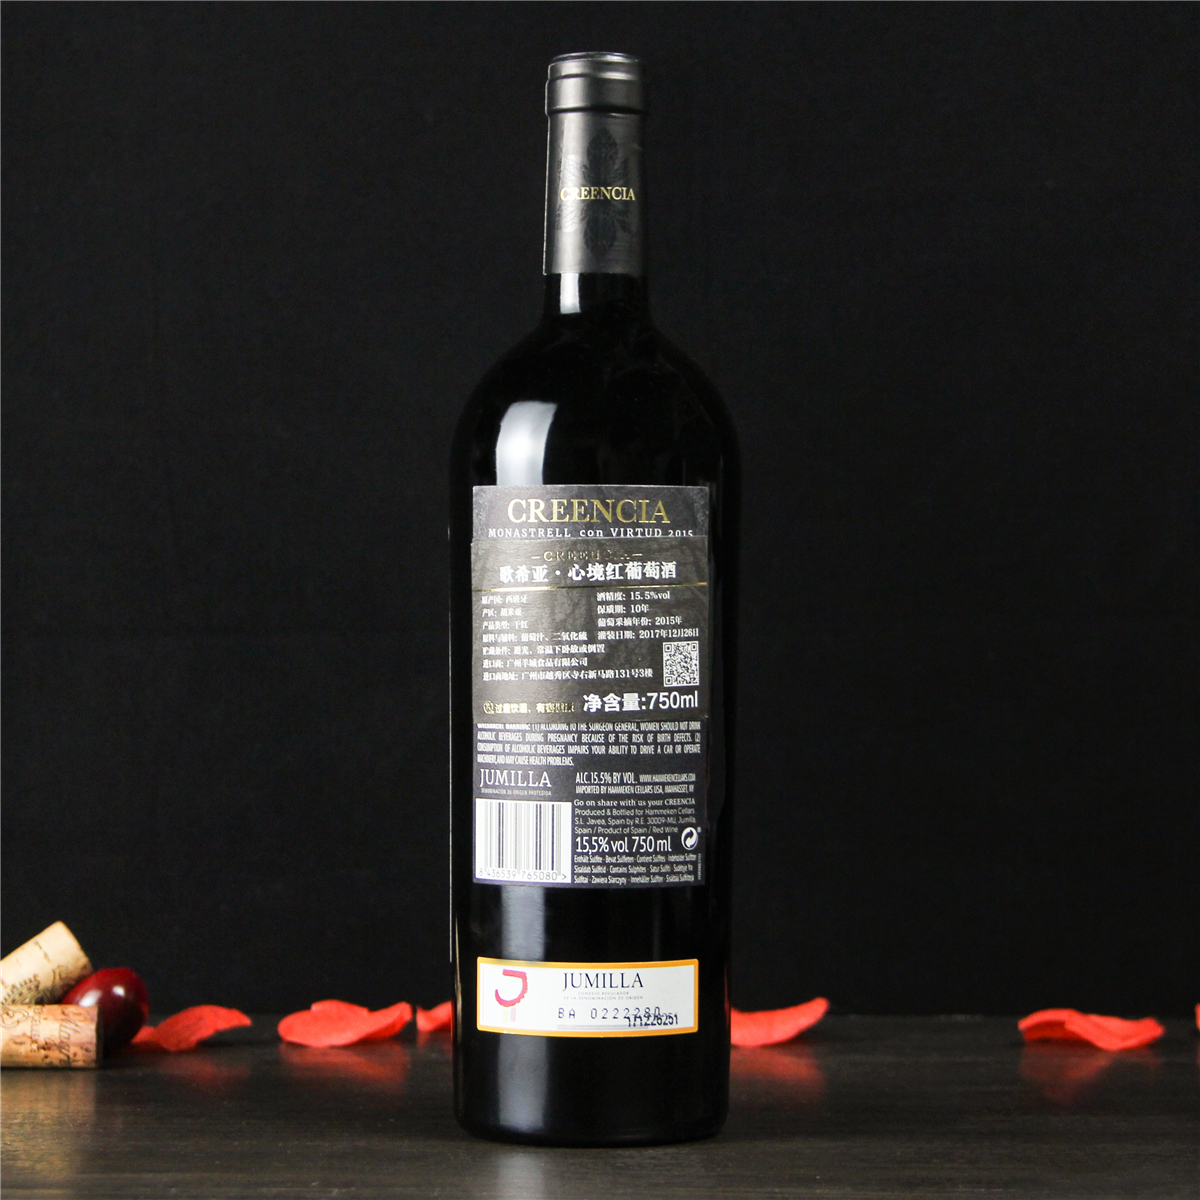 西班牙胡米利亚歌希亚・心境干红葡萄酒红酒